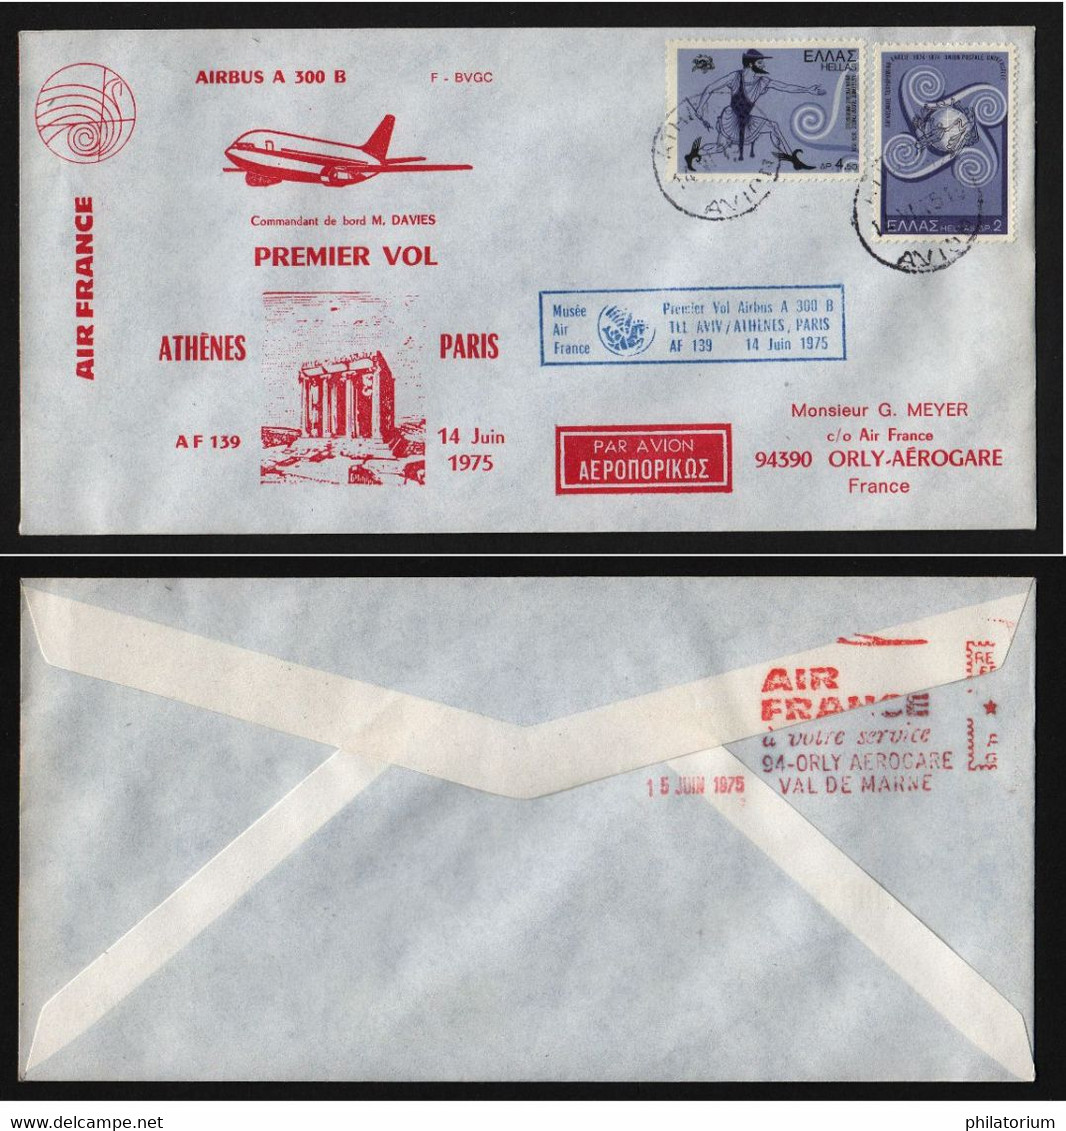 ATHENES  14 Juin 1975  1° Vol Airbus A 300 B  Tel Aviv - Athènes - Paris - Sellados Mecánicos ( Publicitario)